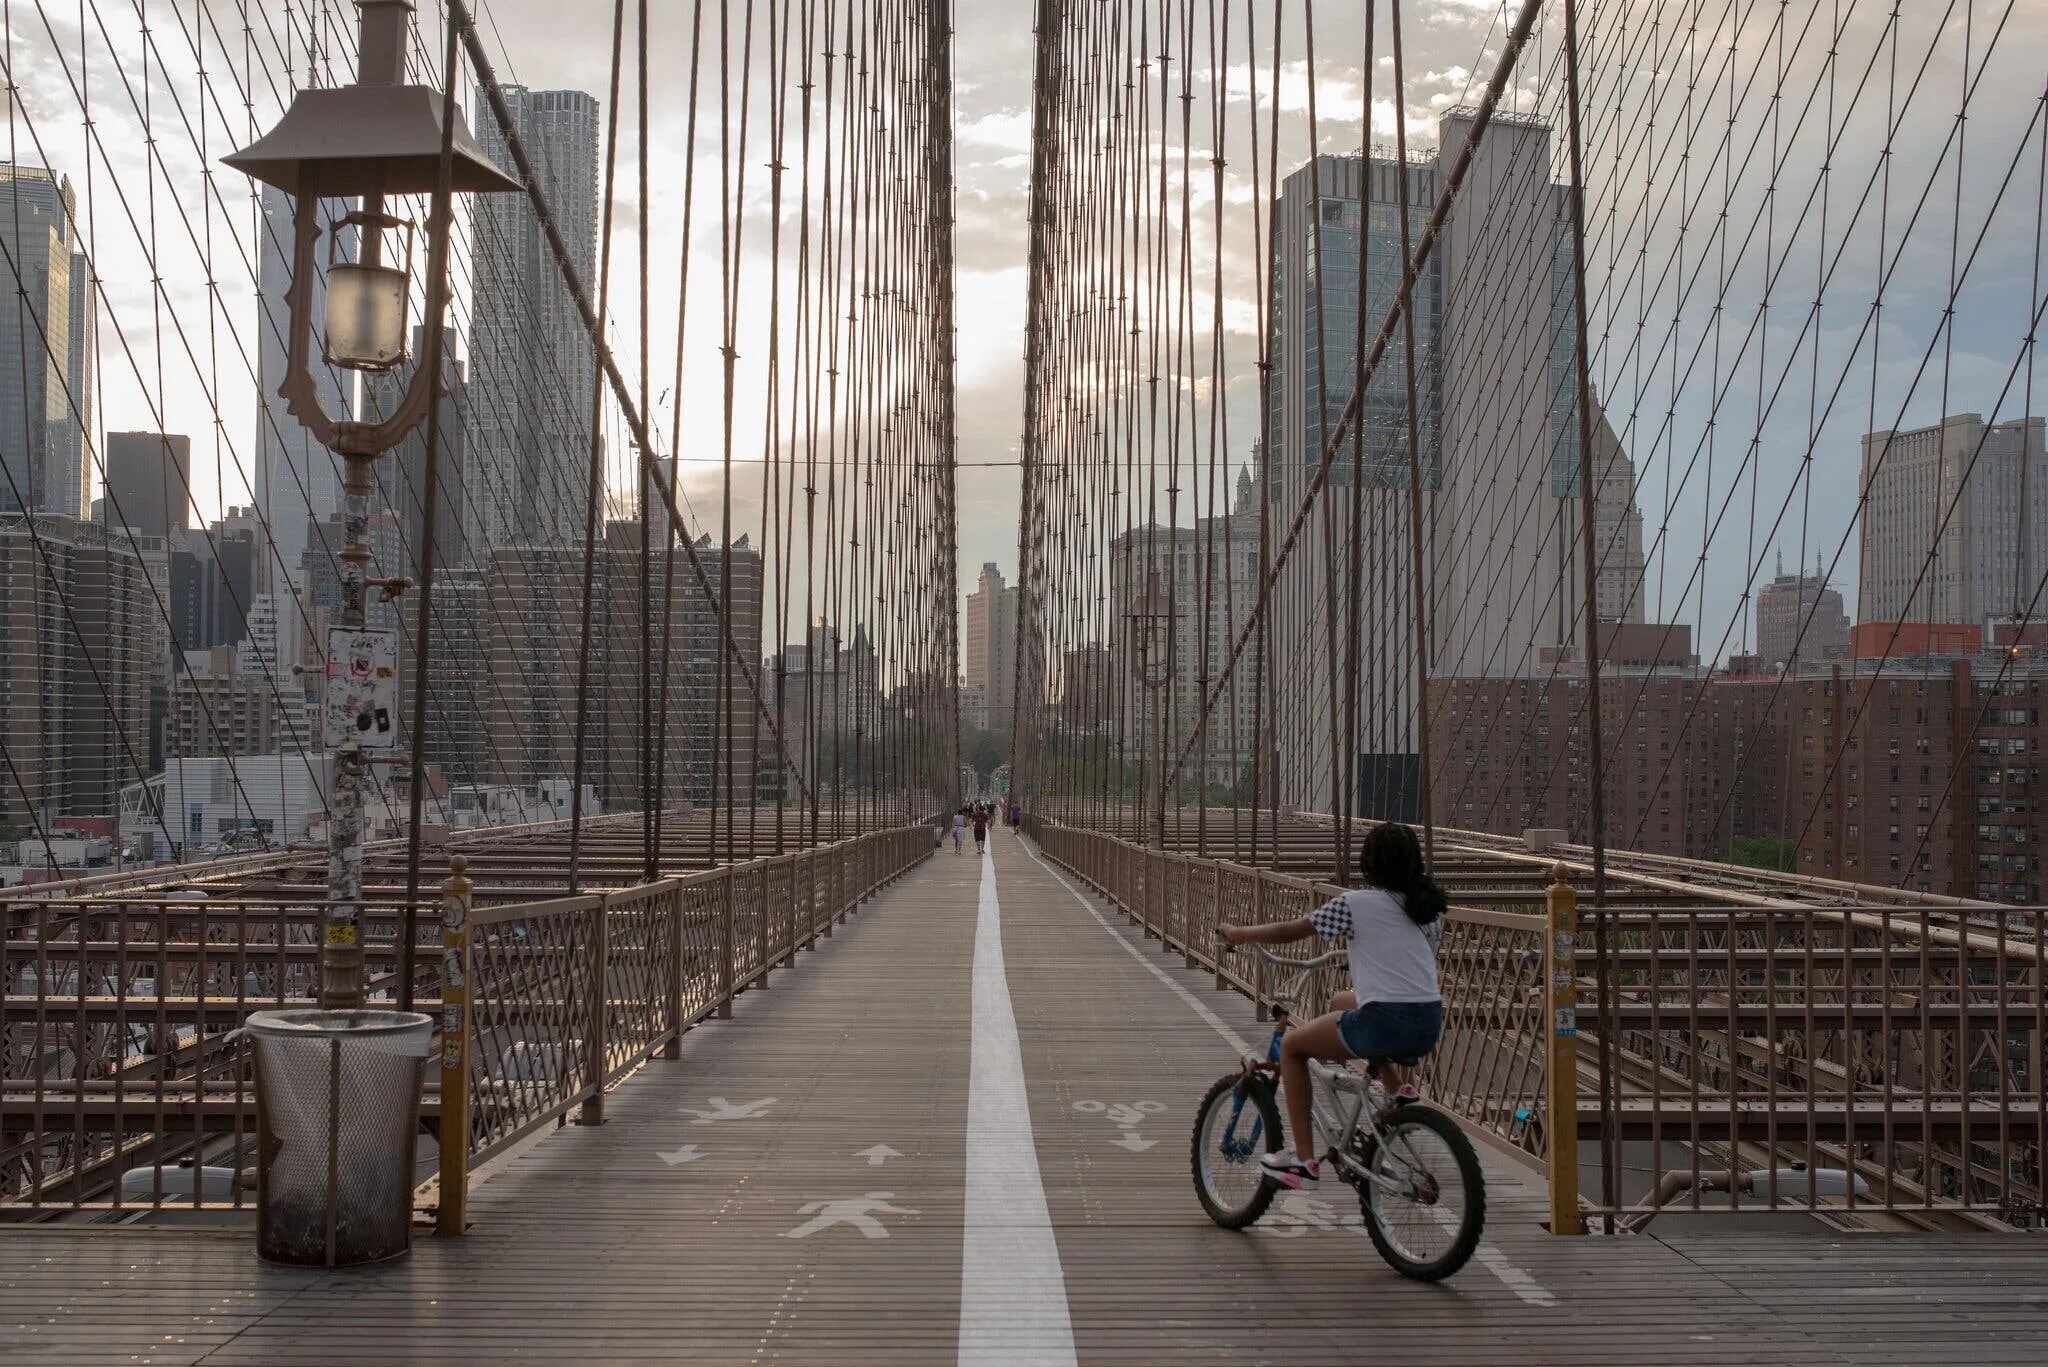 Бруклин мост променад. Бруклинский мост. Бруклинский мост пешеходный. Brooklyn heights Promenade. They the new bridge